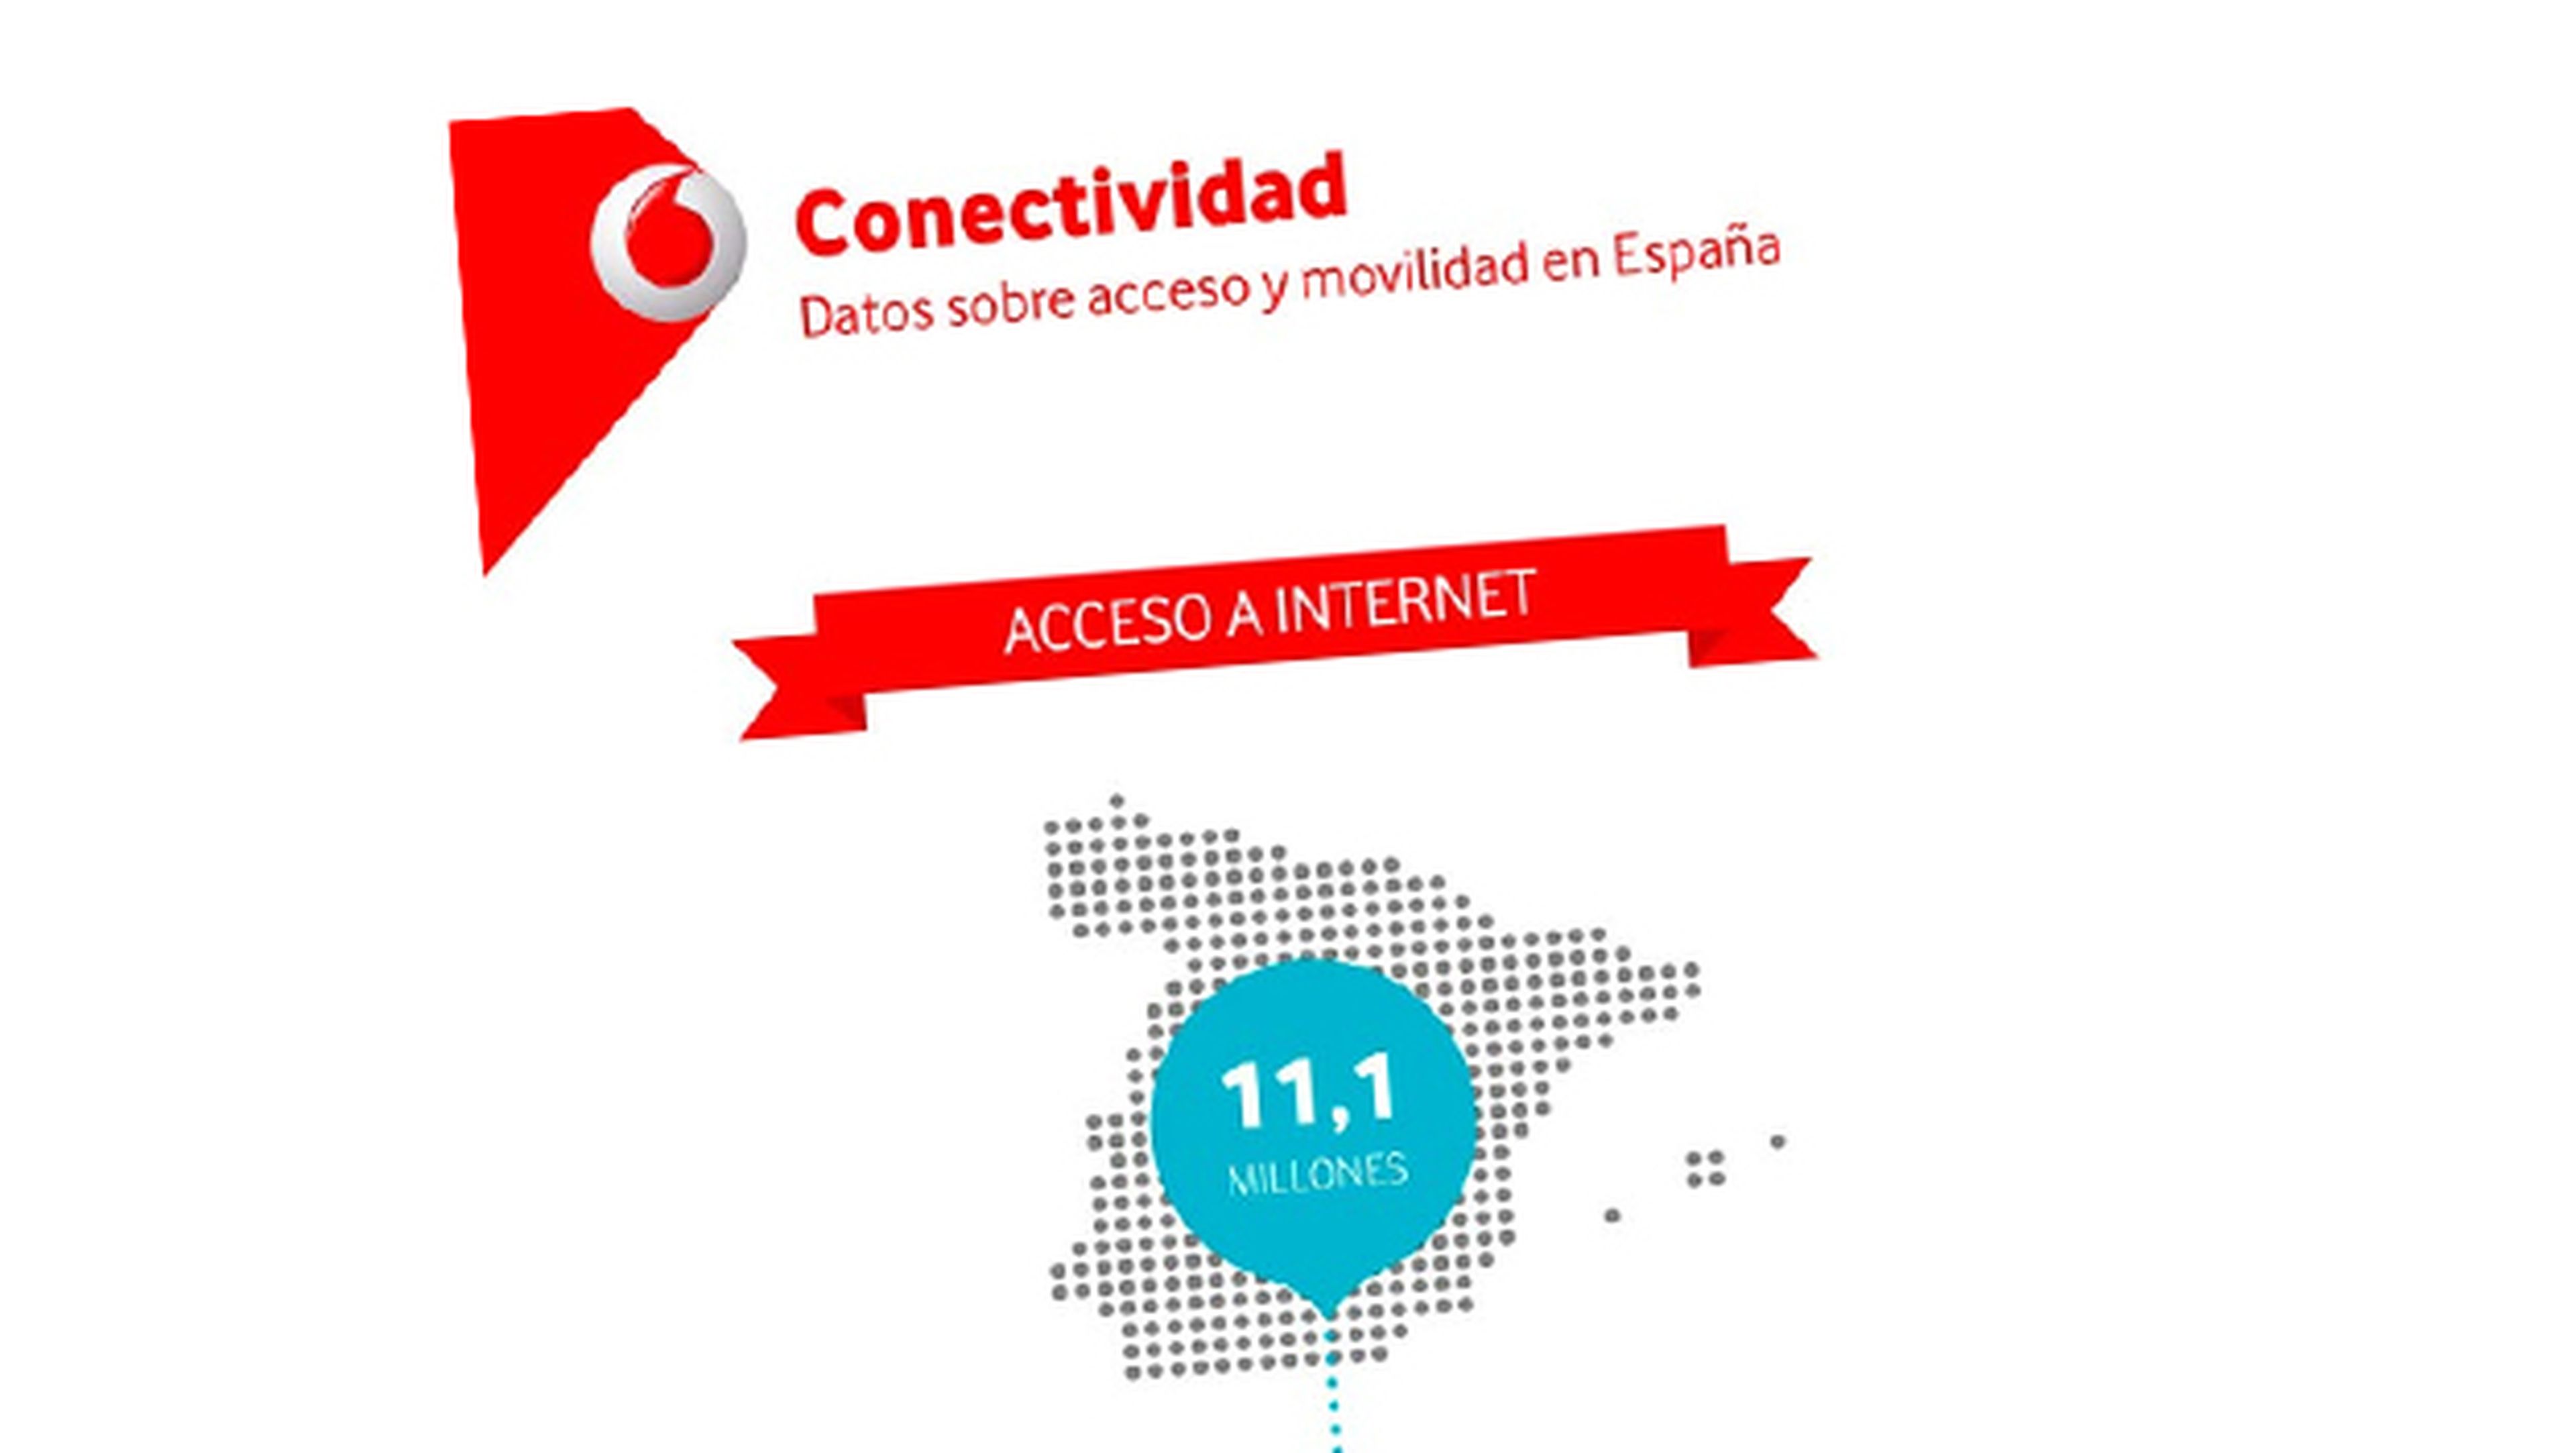 ¿Cómo acceden a Internet los españoles?